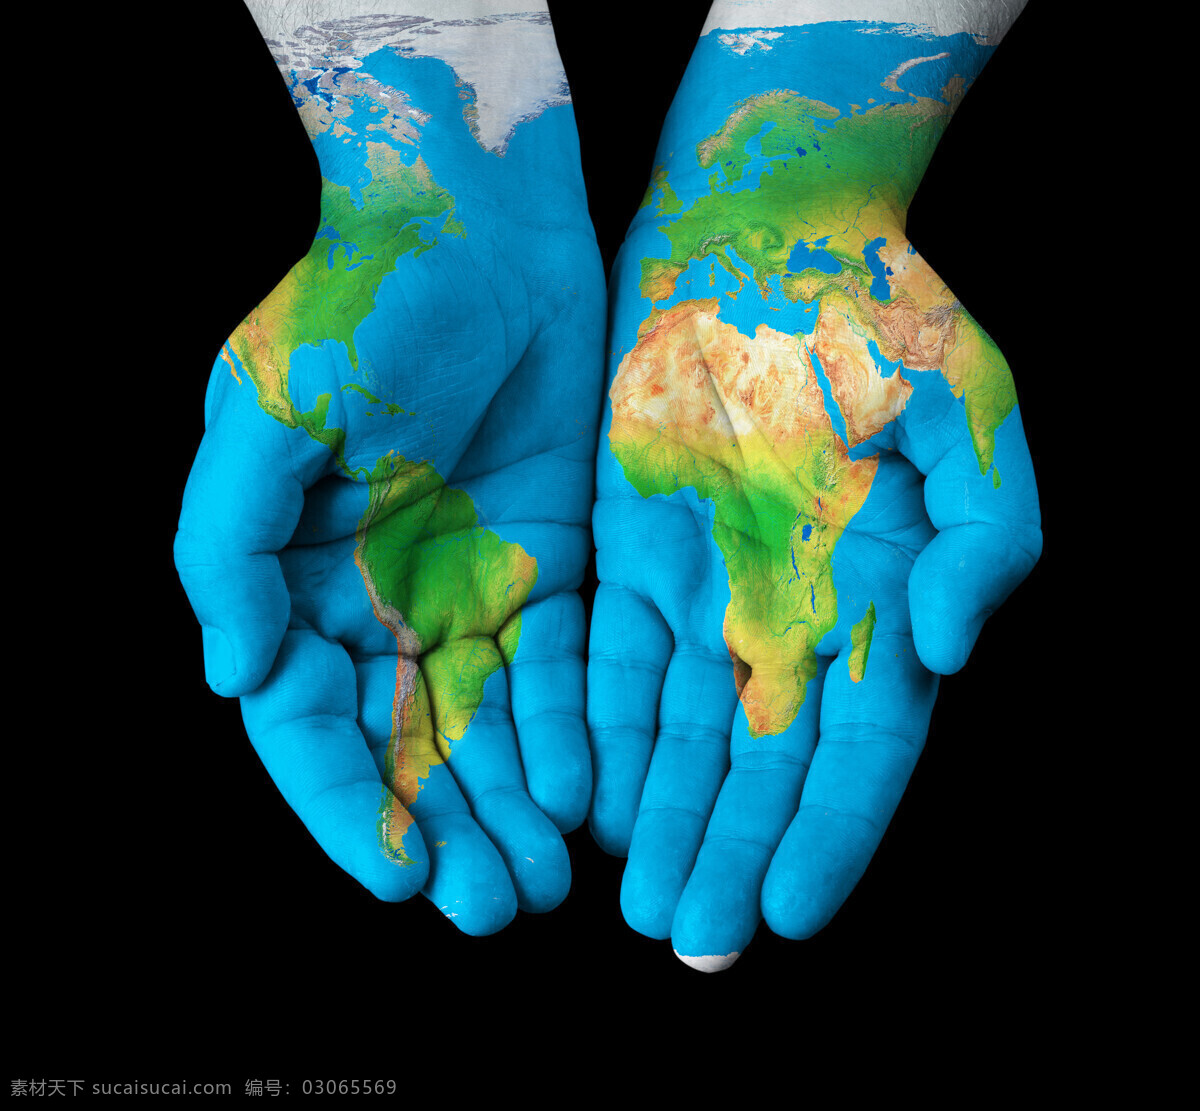 创意双手地球 世界地图 双手 手势 地球保护 绿色环保 生态保护 环境保护 自然风景 自然景观 黑色